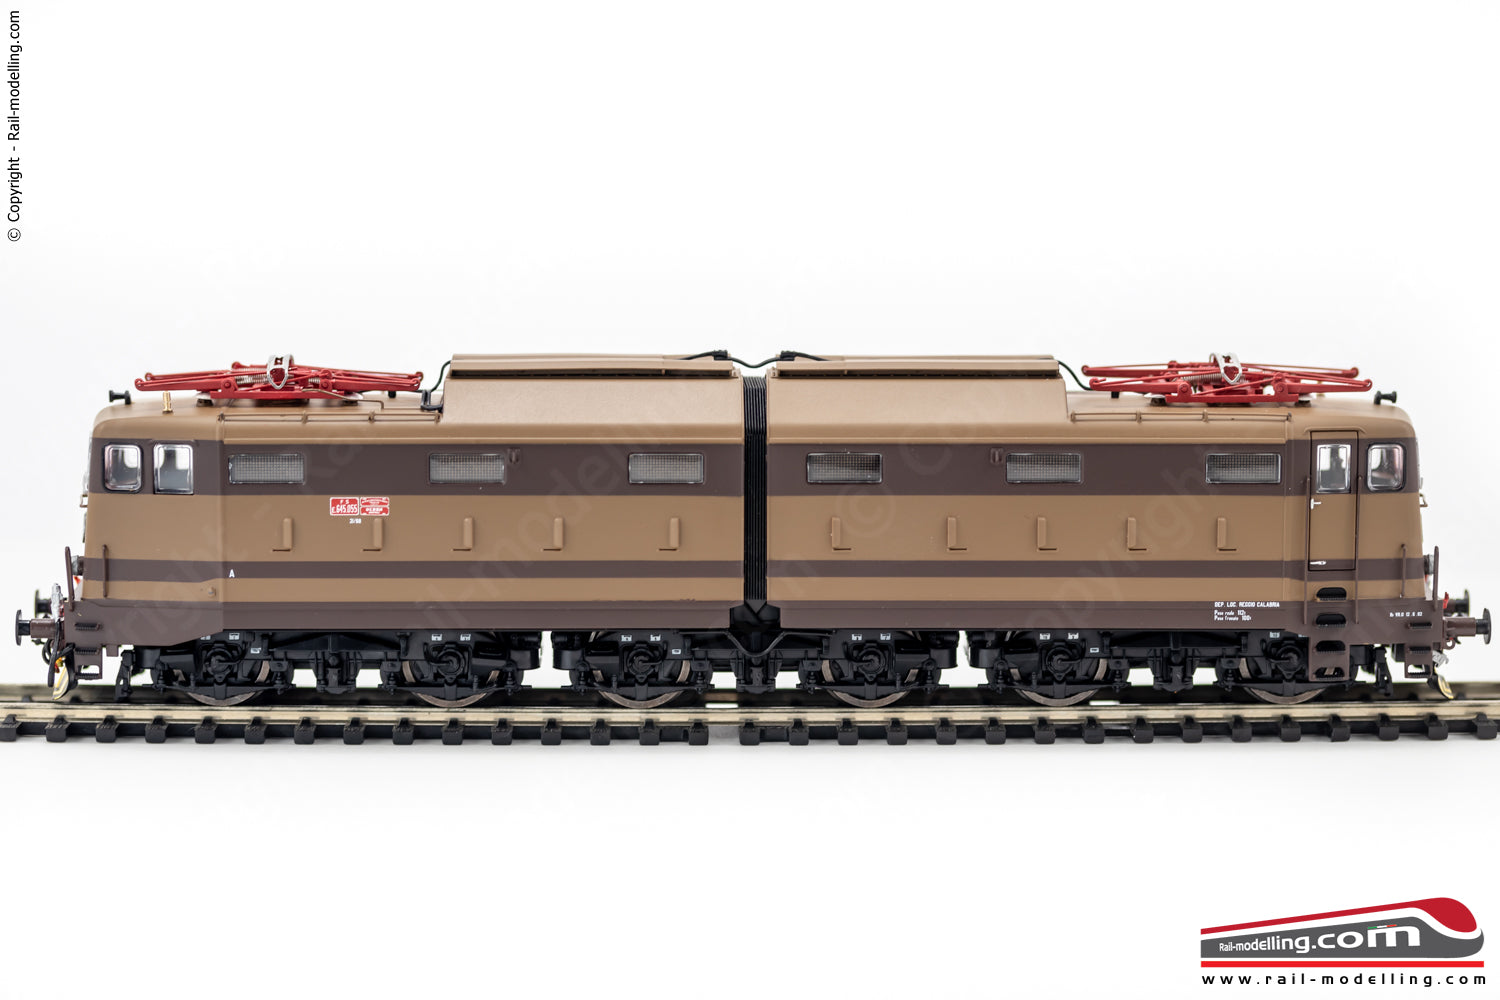 ACME 60169 - H0 1:87 - Locomotiva elettrica FS E.645 055 2° serie livrea castano/isabella Ep. V